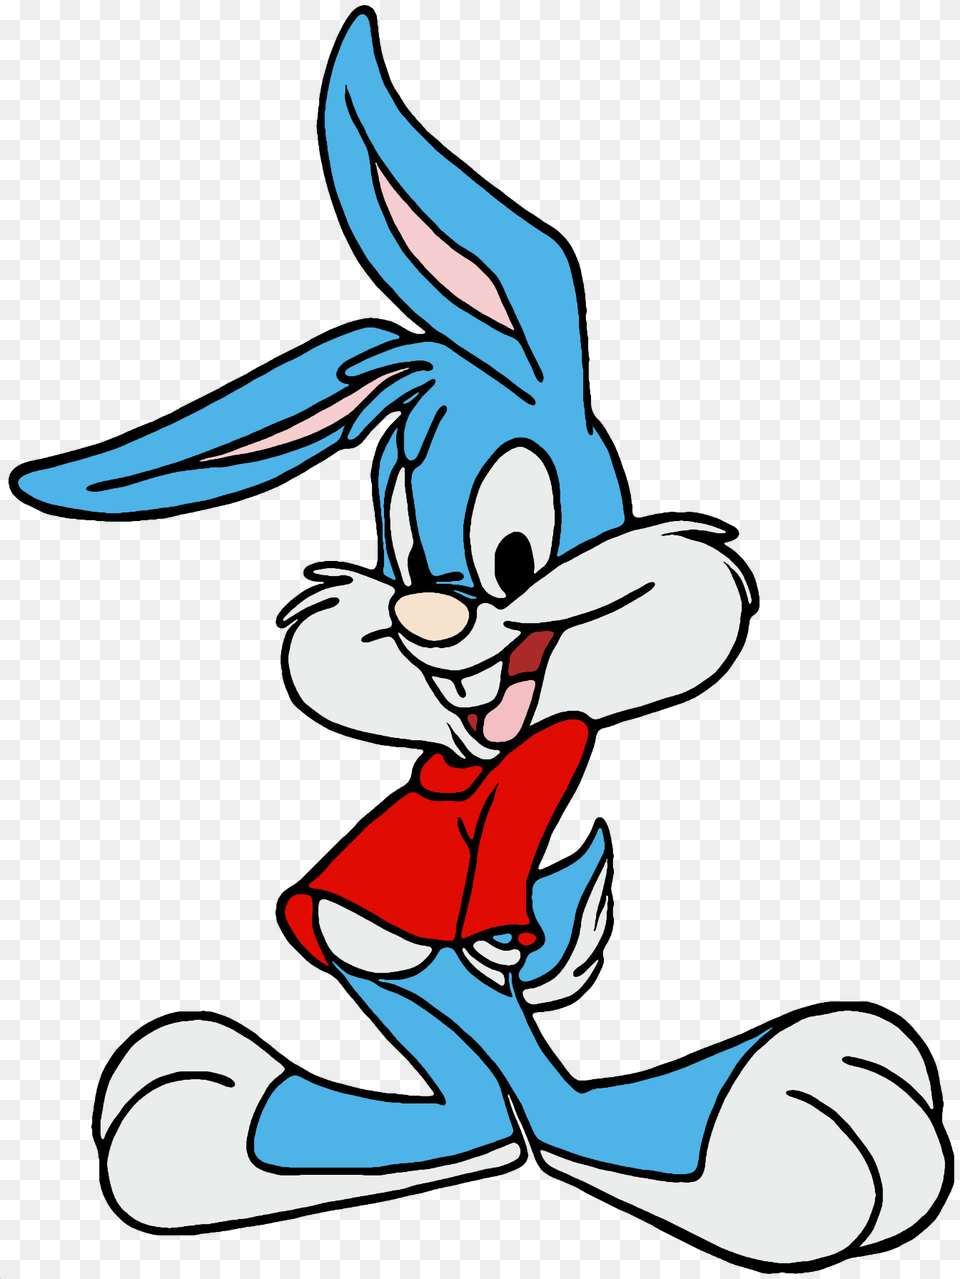 Famous Cartoons Disney Cartoons 90s Cartoons Animated Buster Bunny, Cartoon, Book, Comics, Publication Free Png Download